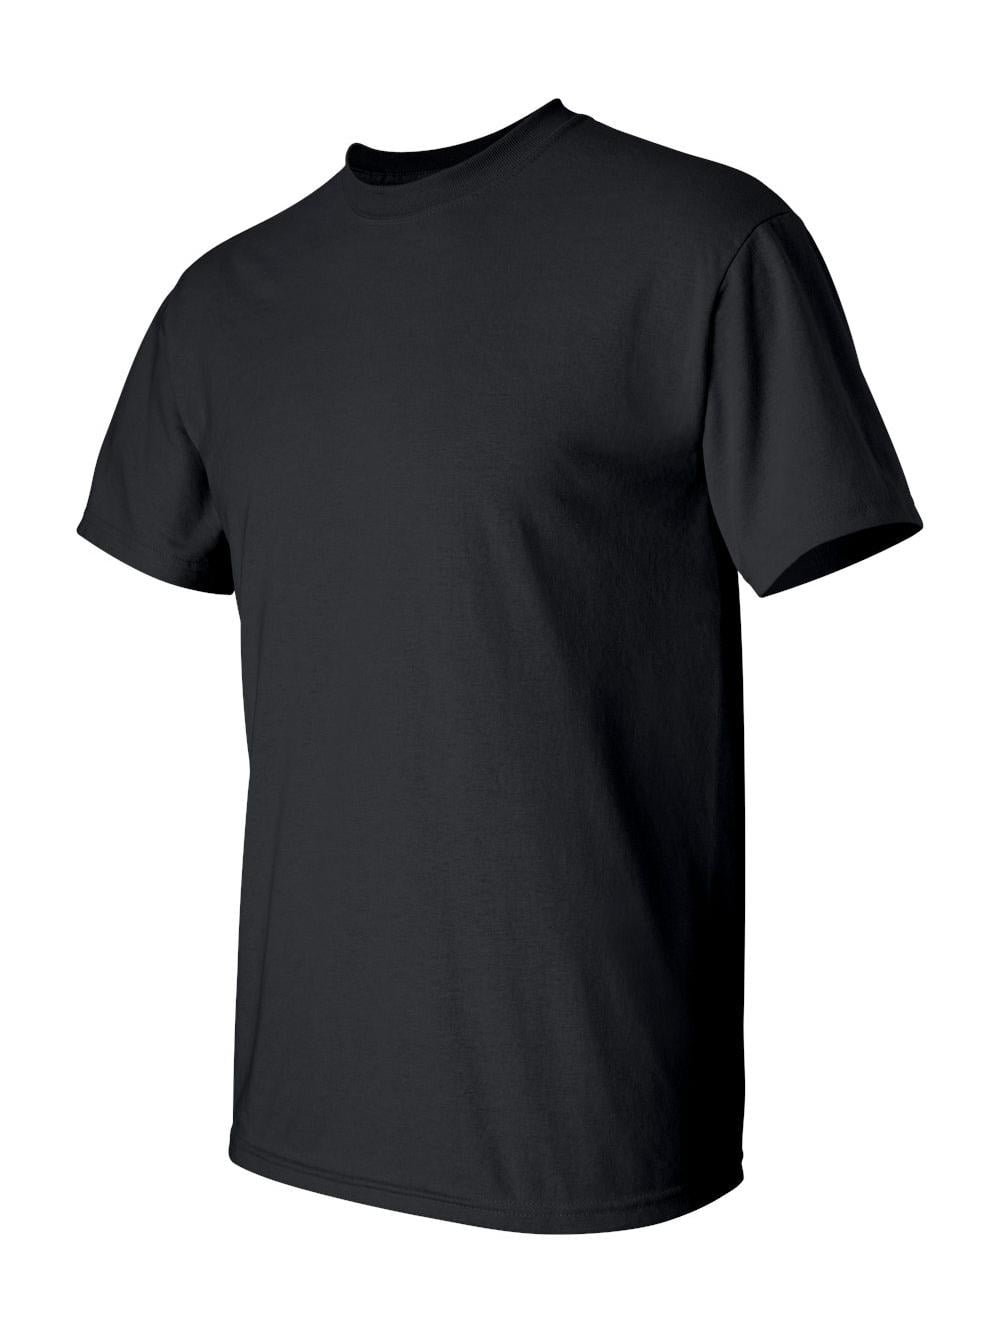 Gildan - Ultra Cotton Tall T-Shirt - 2000T - Black - Size: 2XLT ...